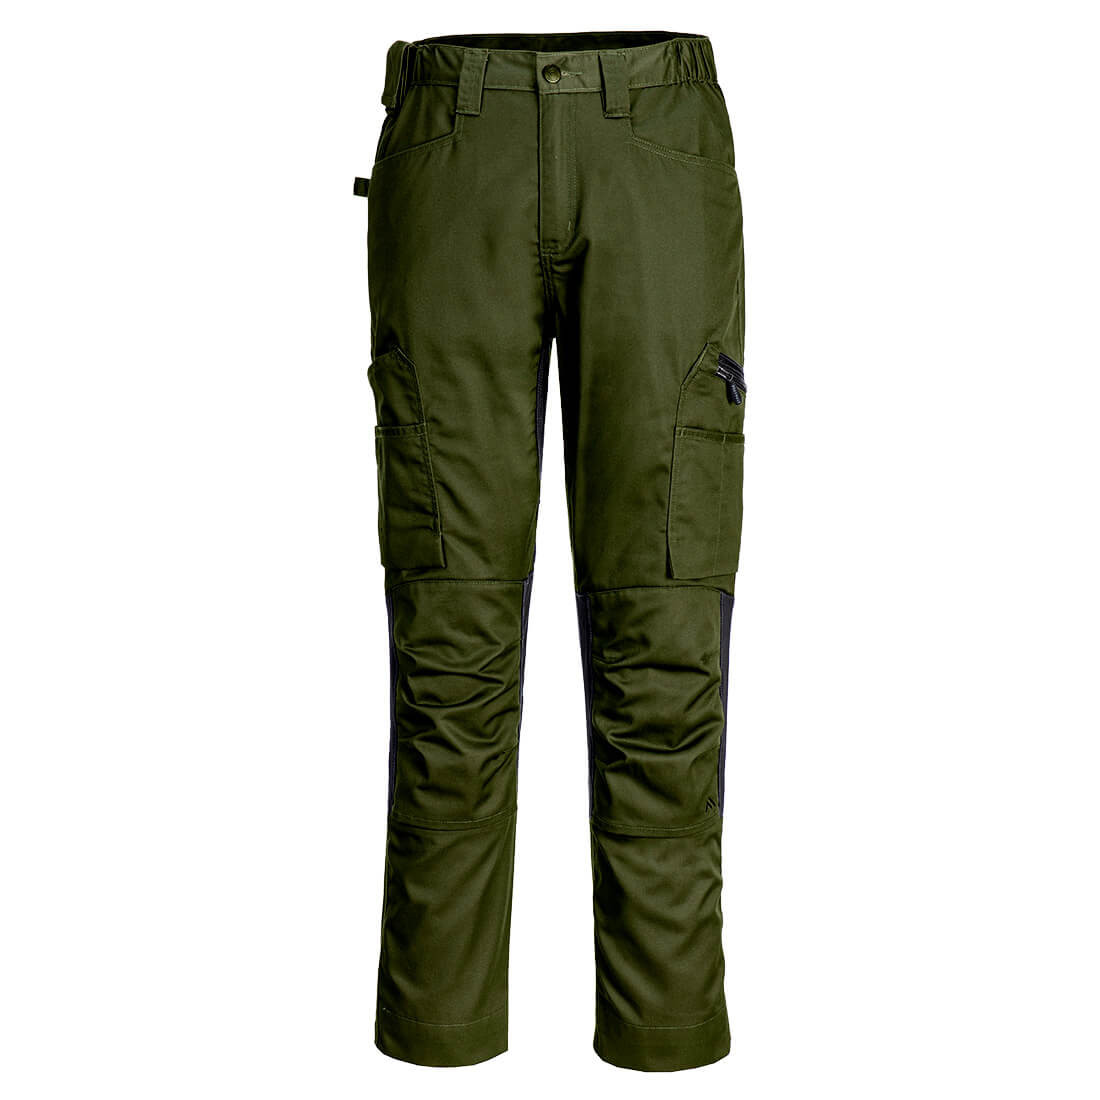 Pantalón WX2 Eco Stretch Trade - Ropa de protección